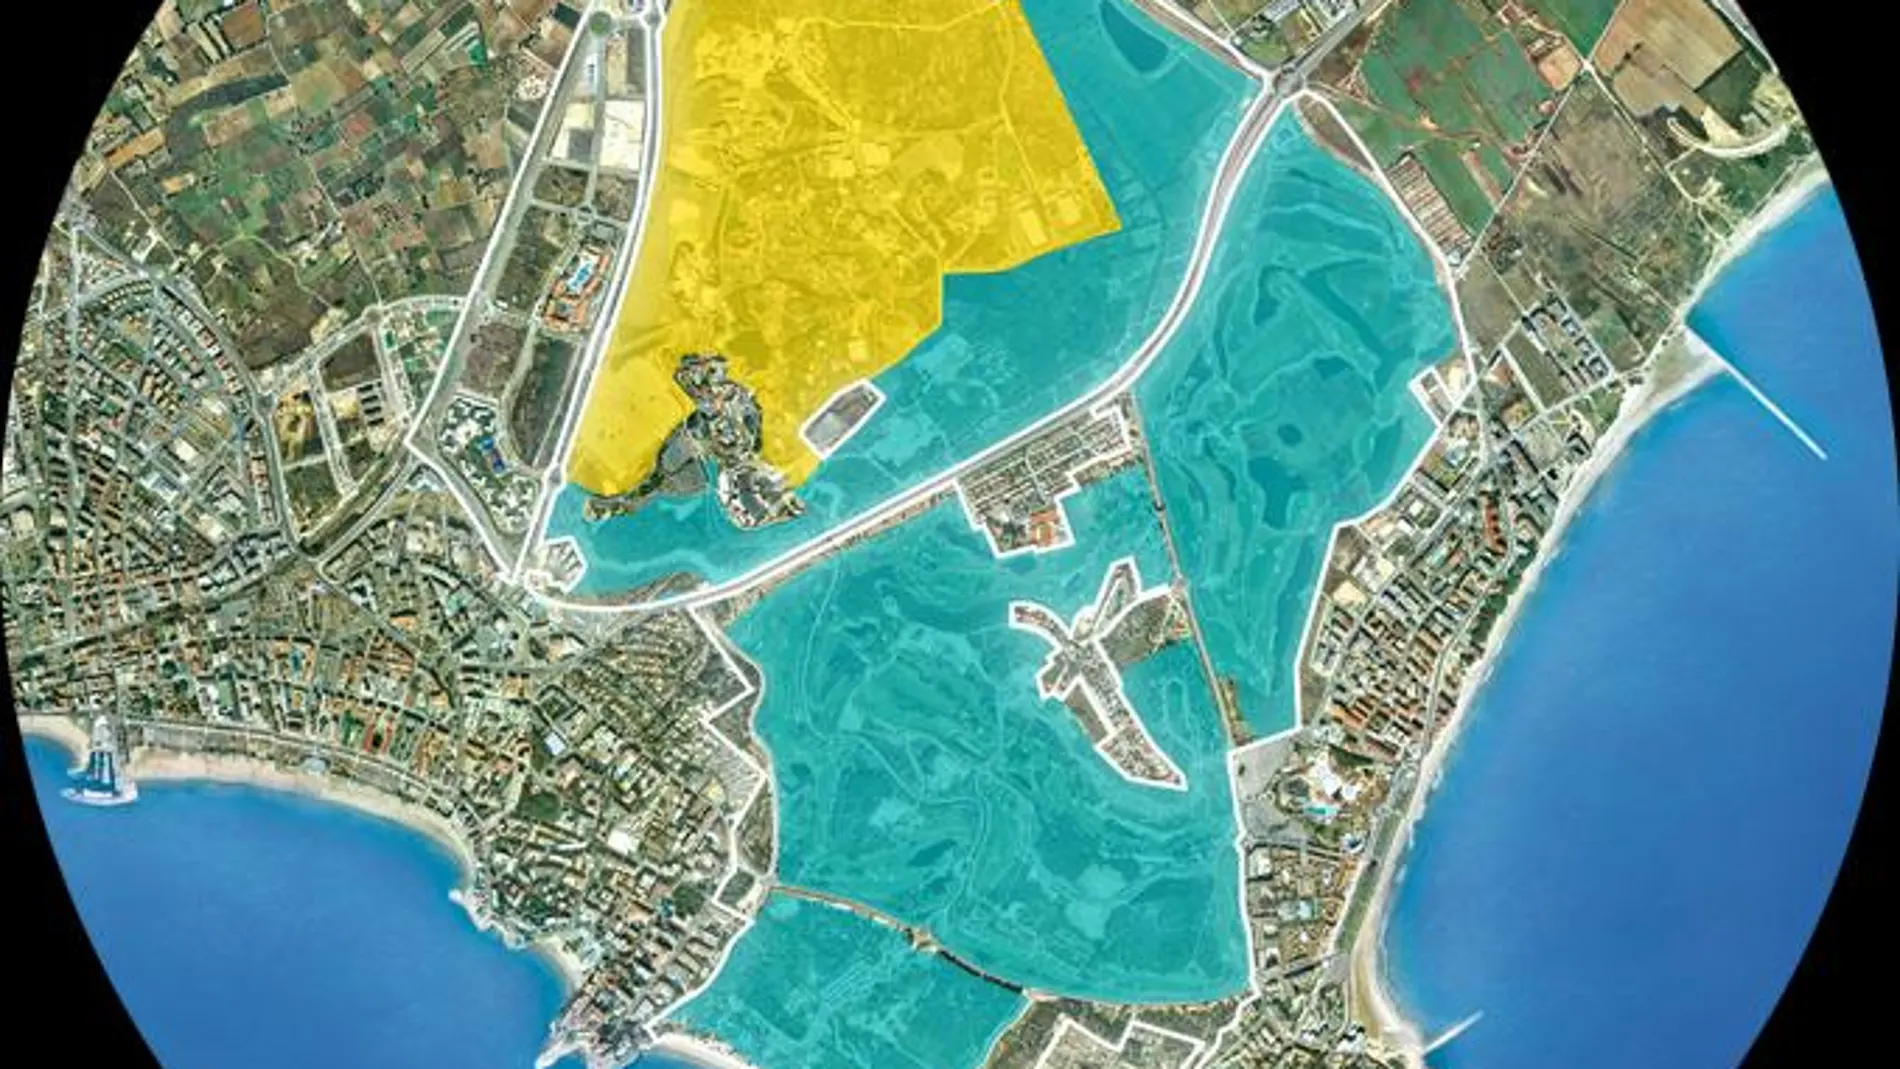 En amarillo, el parque temático Port Aventura, y en azul, los terrenos que ocupará BCN World